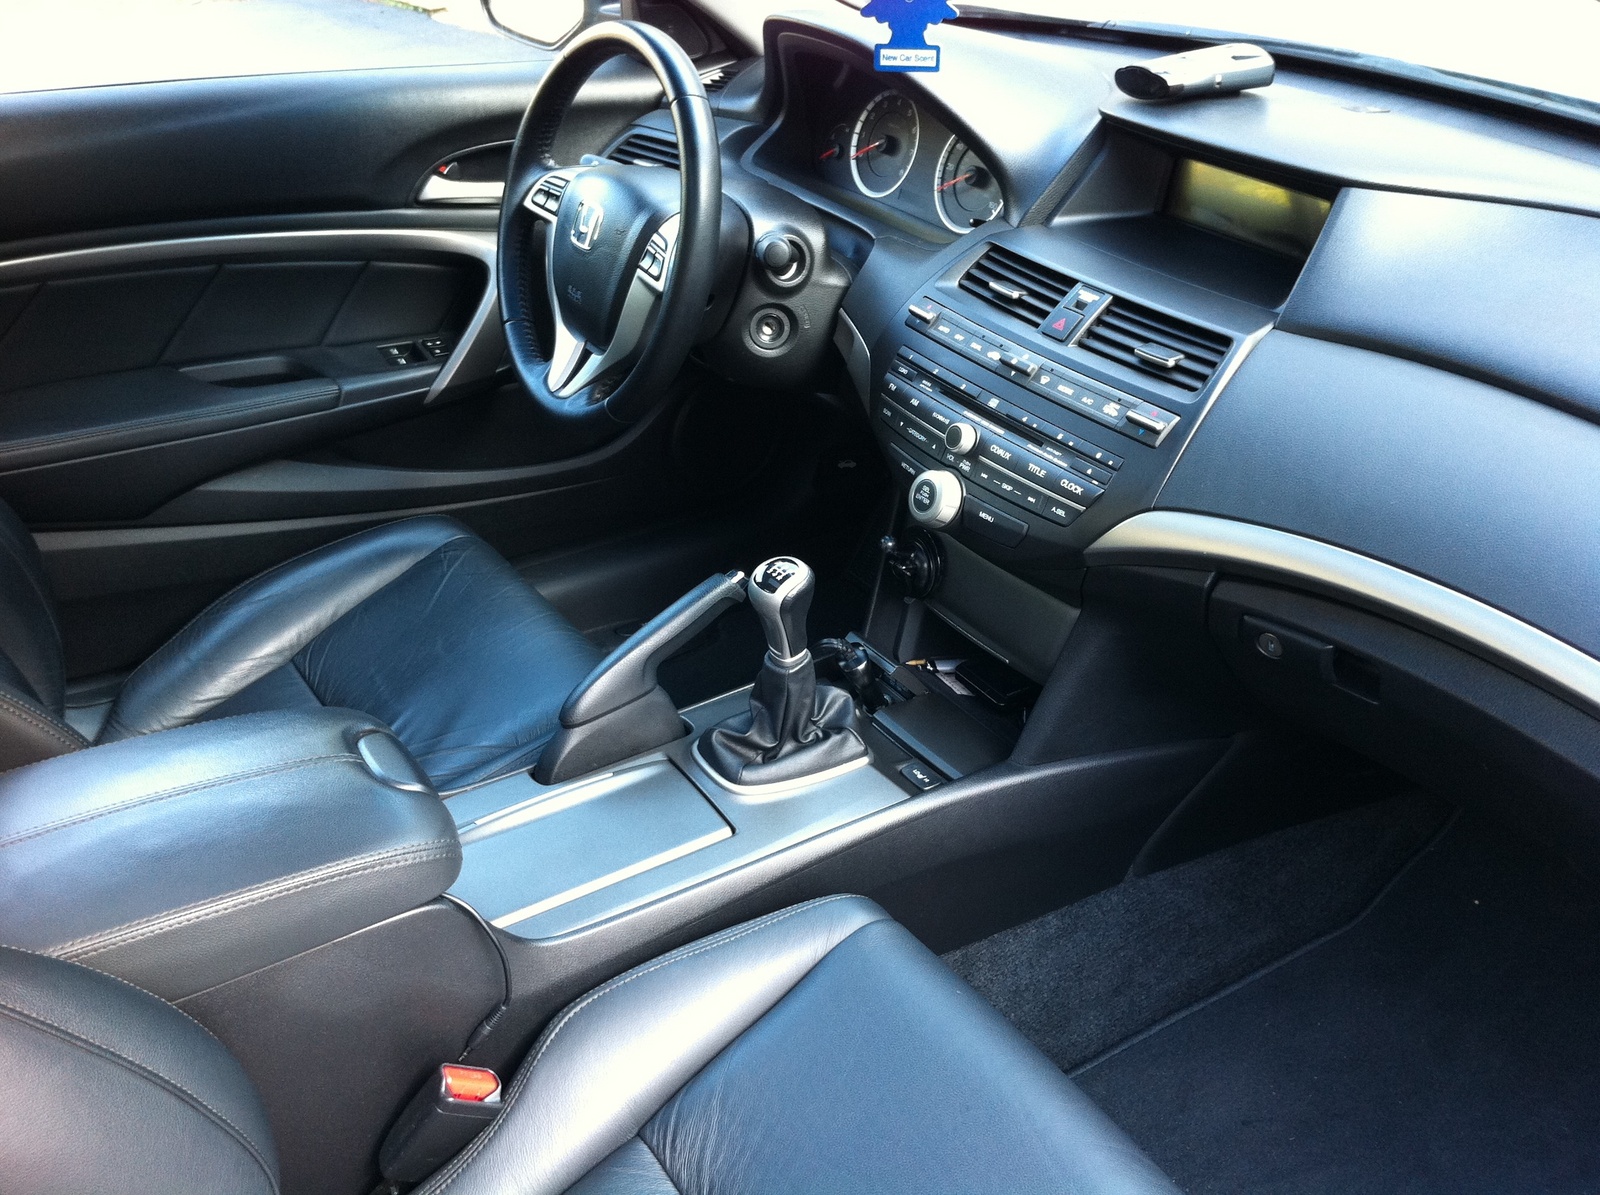 2009 Honda Accord Coupe - Interior Pictures - CarGurus